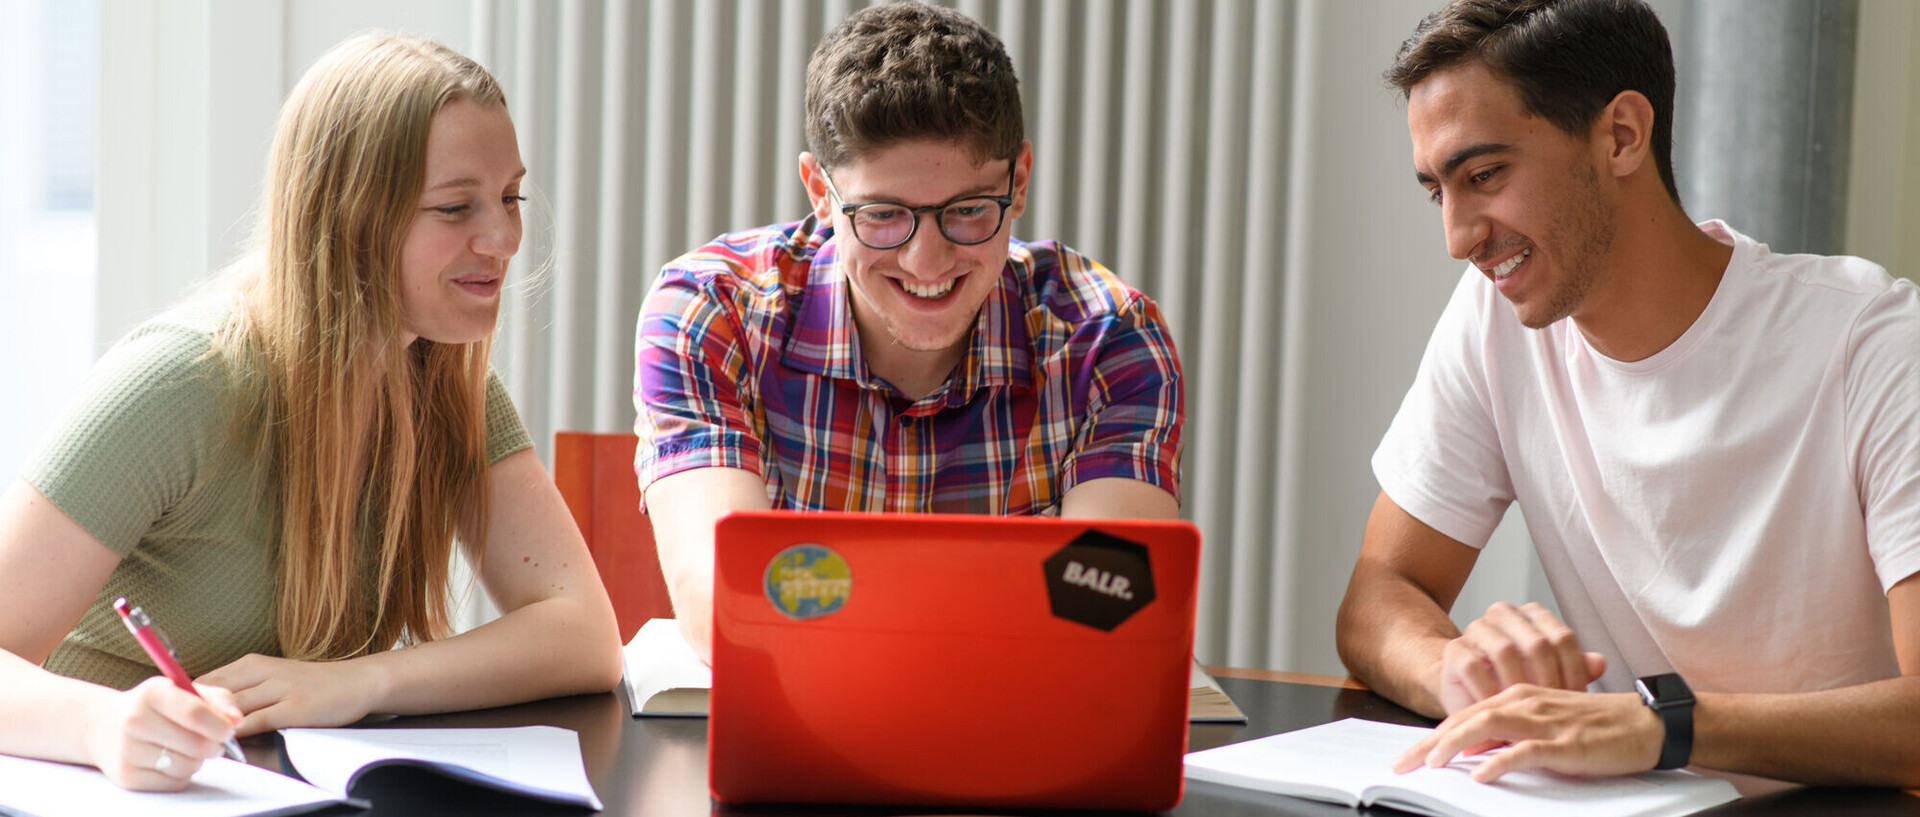 Drei Studierende sitzen mit ihren Arbeitsmaterialien vor einem roten Laptop